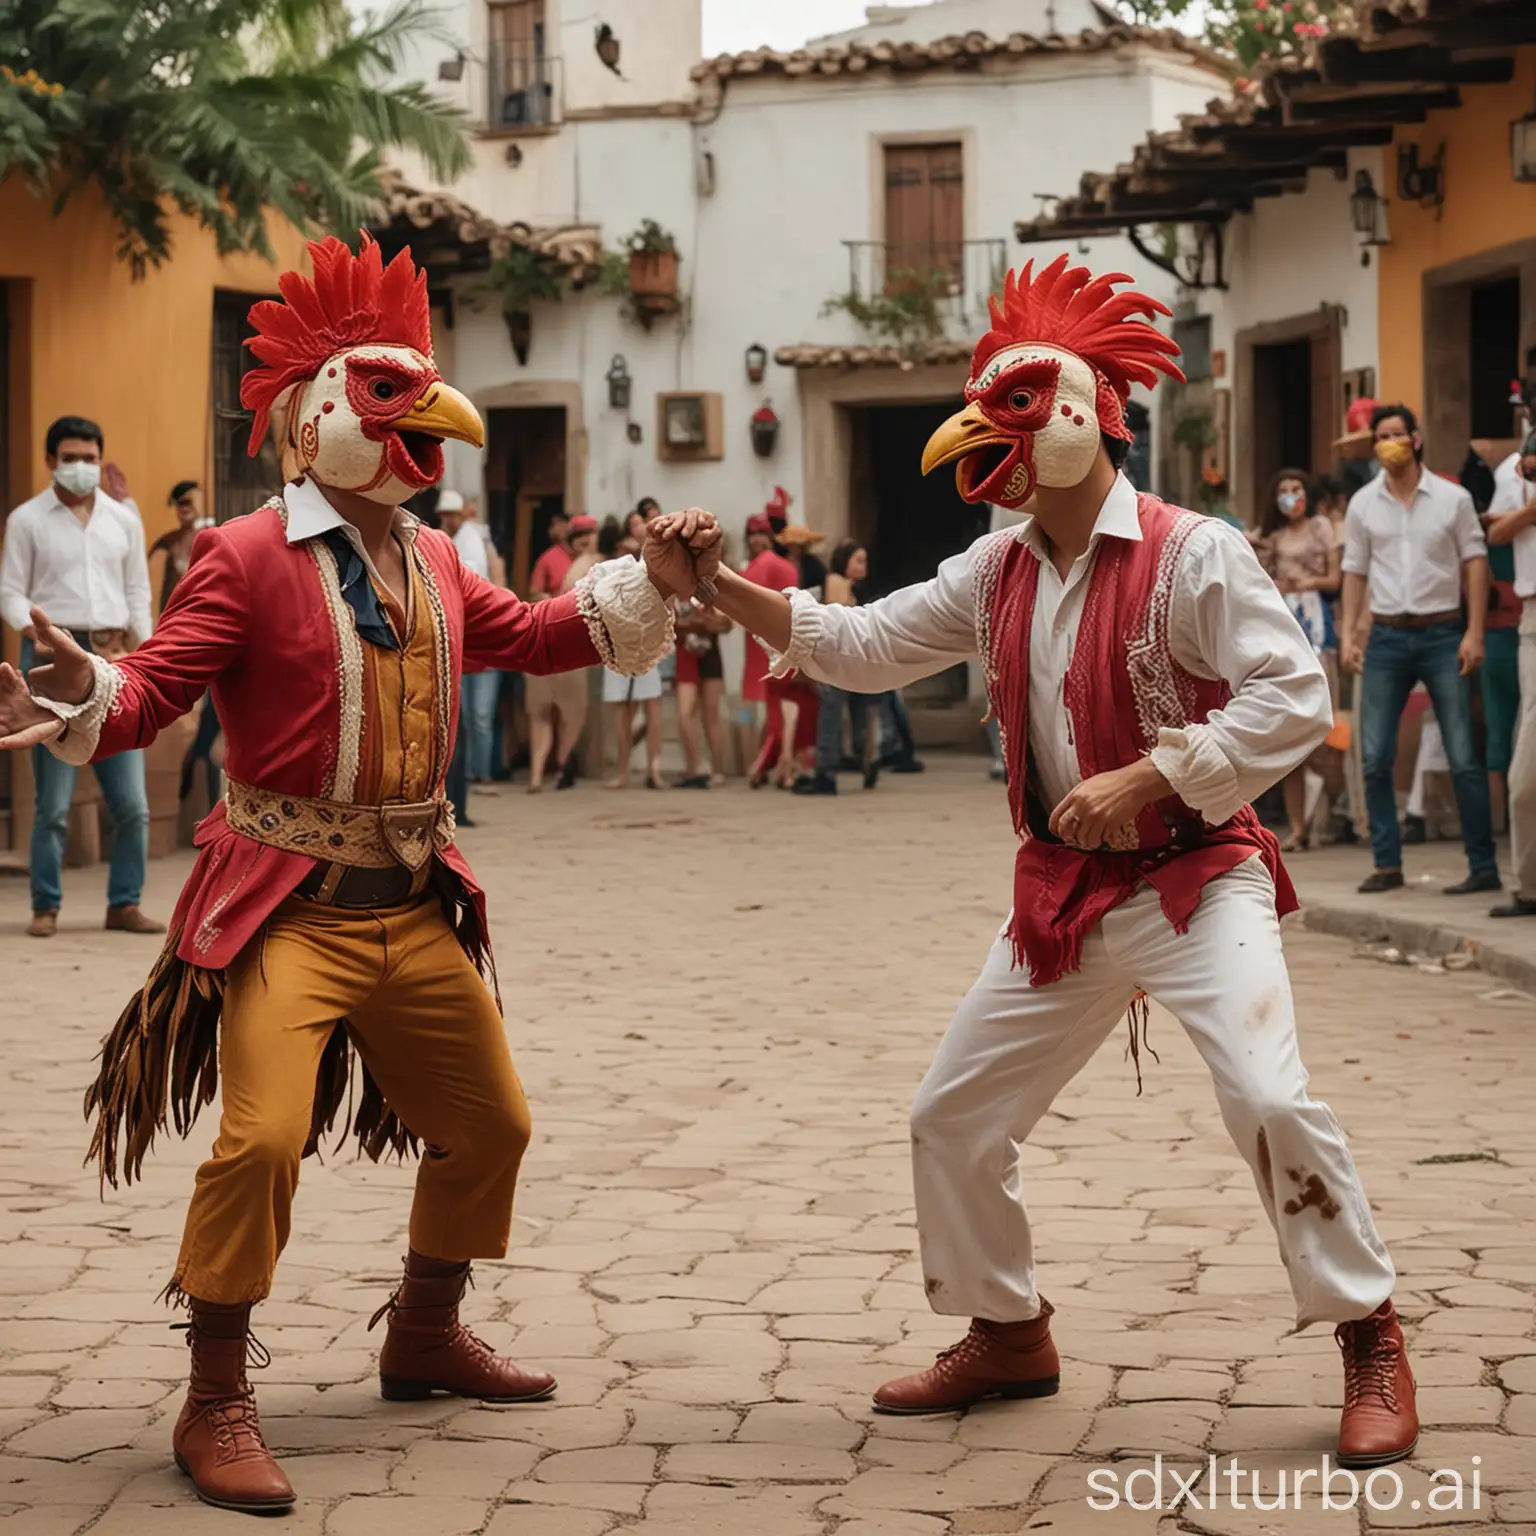 2 actoresactuan verbalmente actuan apasionadamente  en una pintoresca plaza estilo lucha libre mexicana de gallos con máscaras divertidas de gallos, toda la gente feliz aplaude